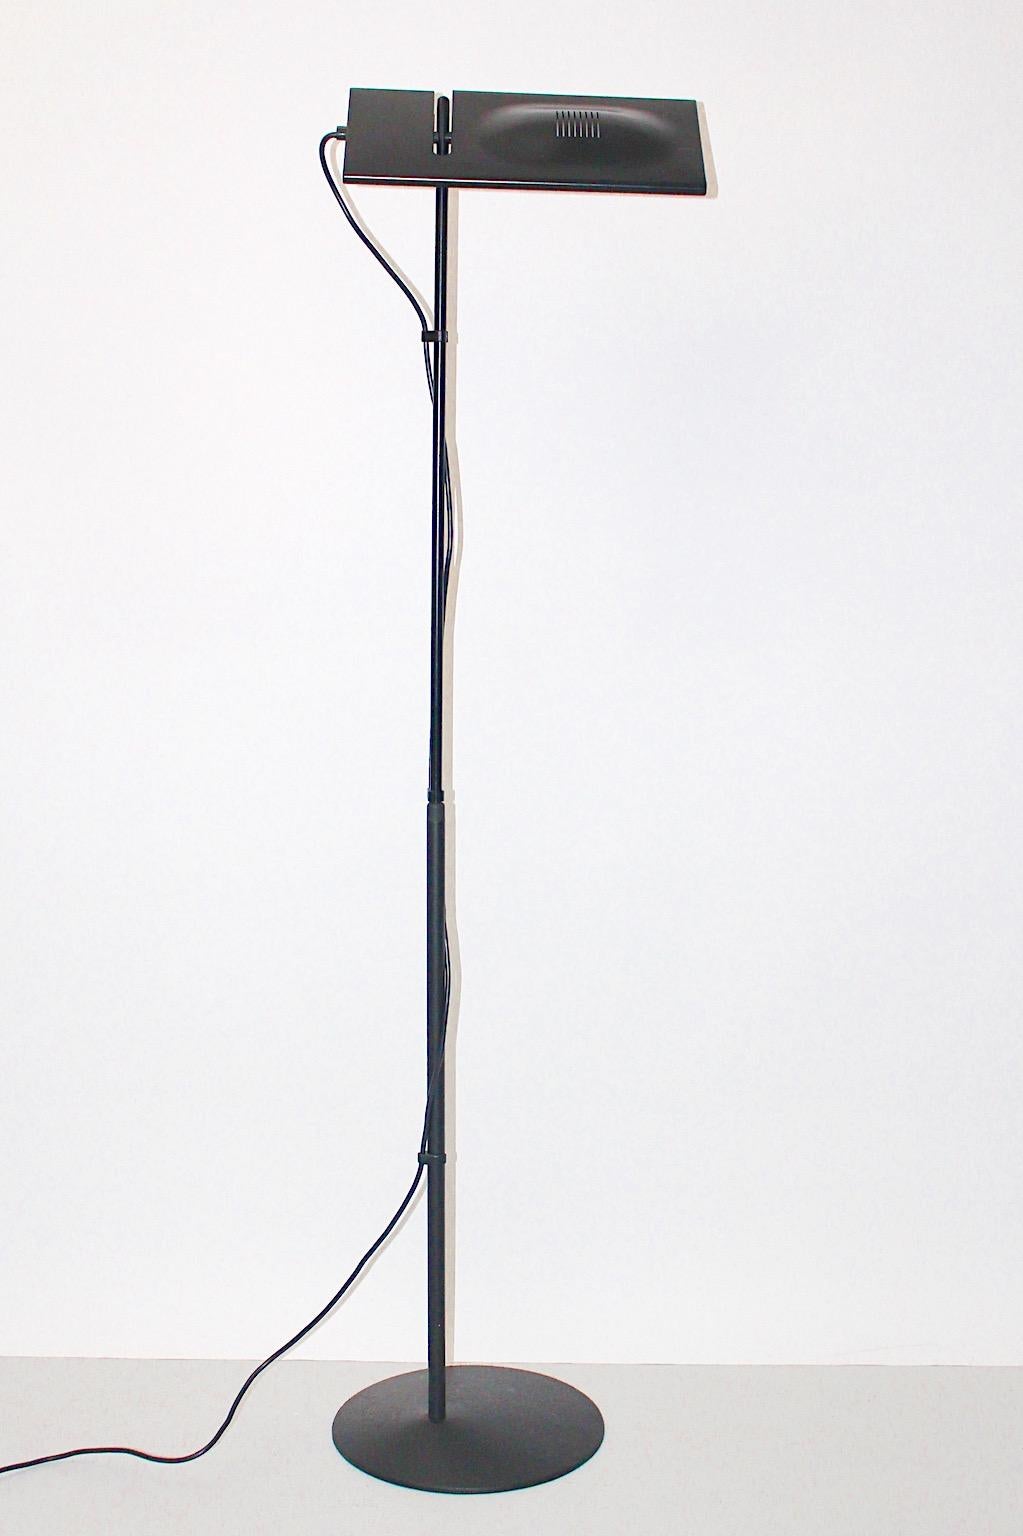 Lampadaire moderne noir vintage modèle Luna, qui a été conçu par Marco Colombo & Mario Baraglia pour PAF Studio Milano, circa 1980.
Le lampadaire est doté d'une tige en métal ajustable laqué noir et d'un abat-jour ajustable.
Il s'allume à l'aide